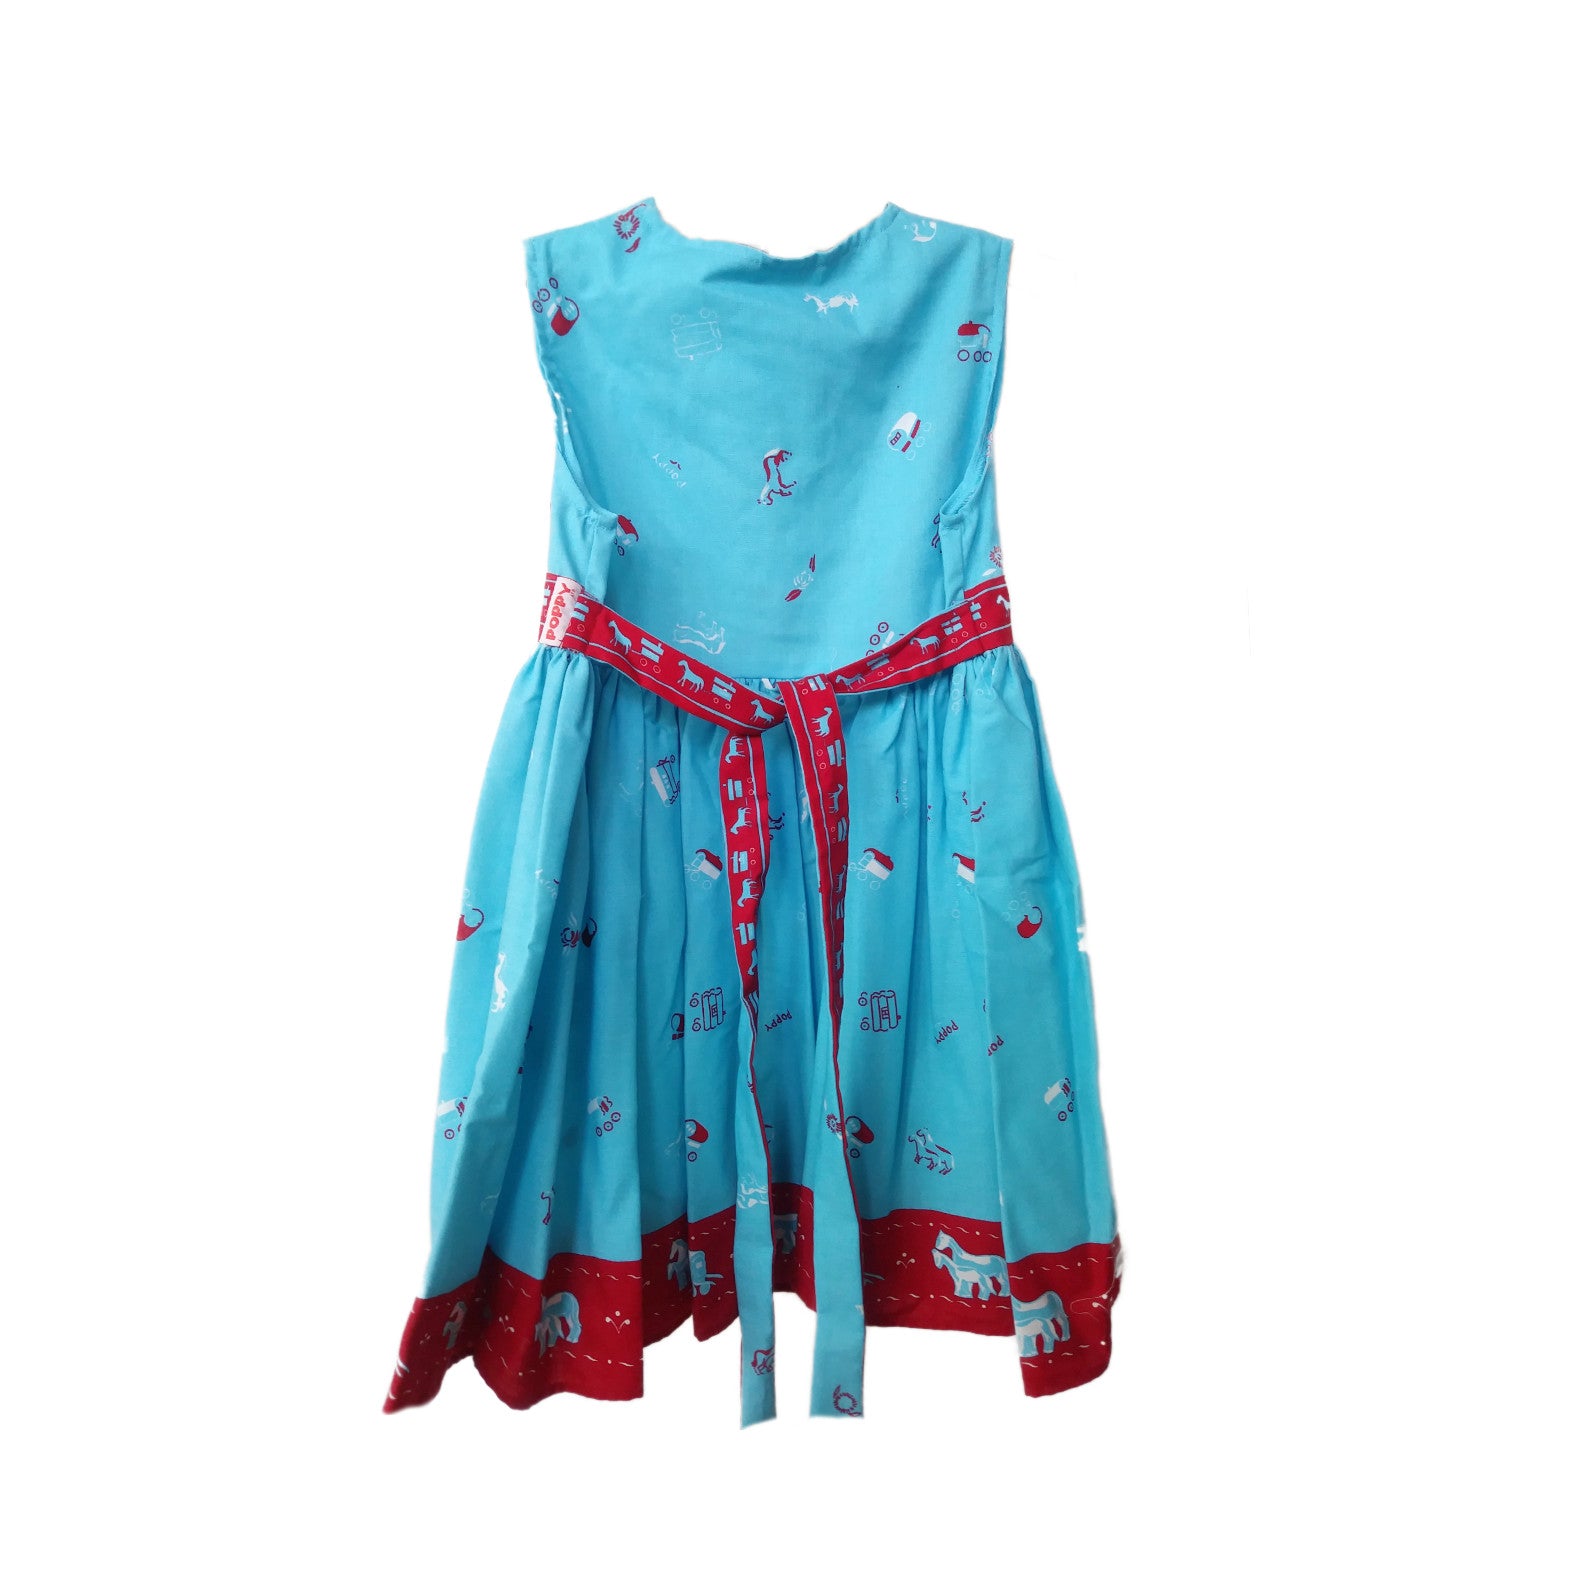 Juliet Dress - Turquoise Gypsy Caravan